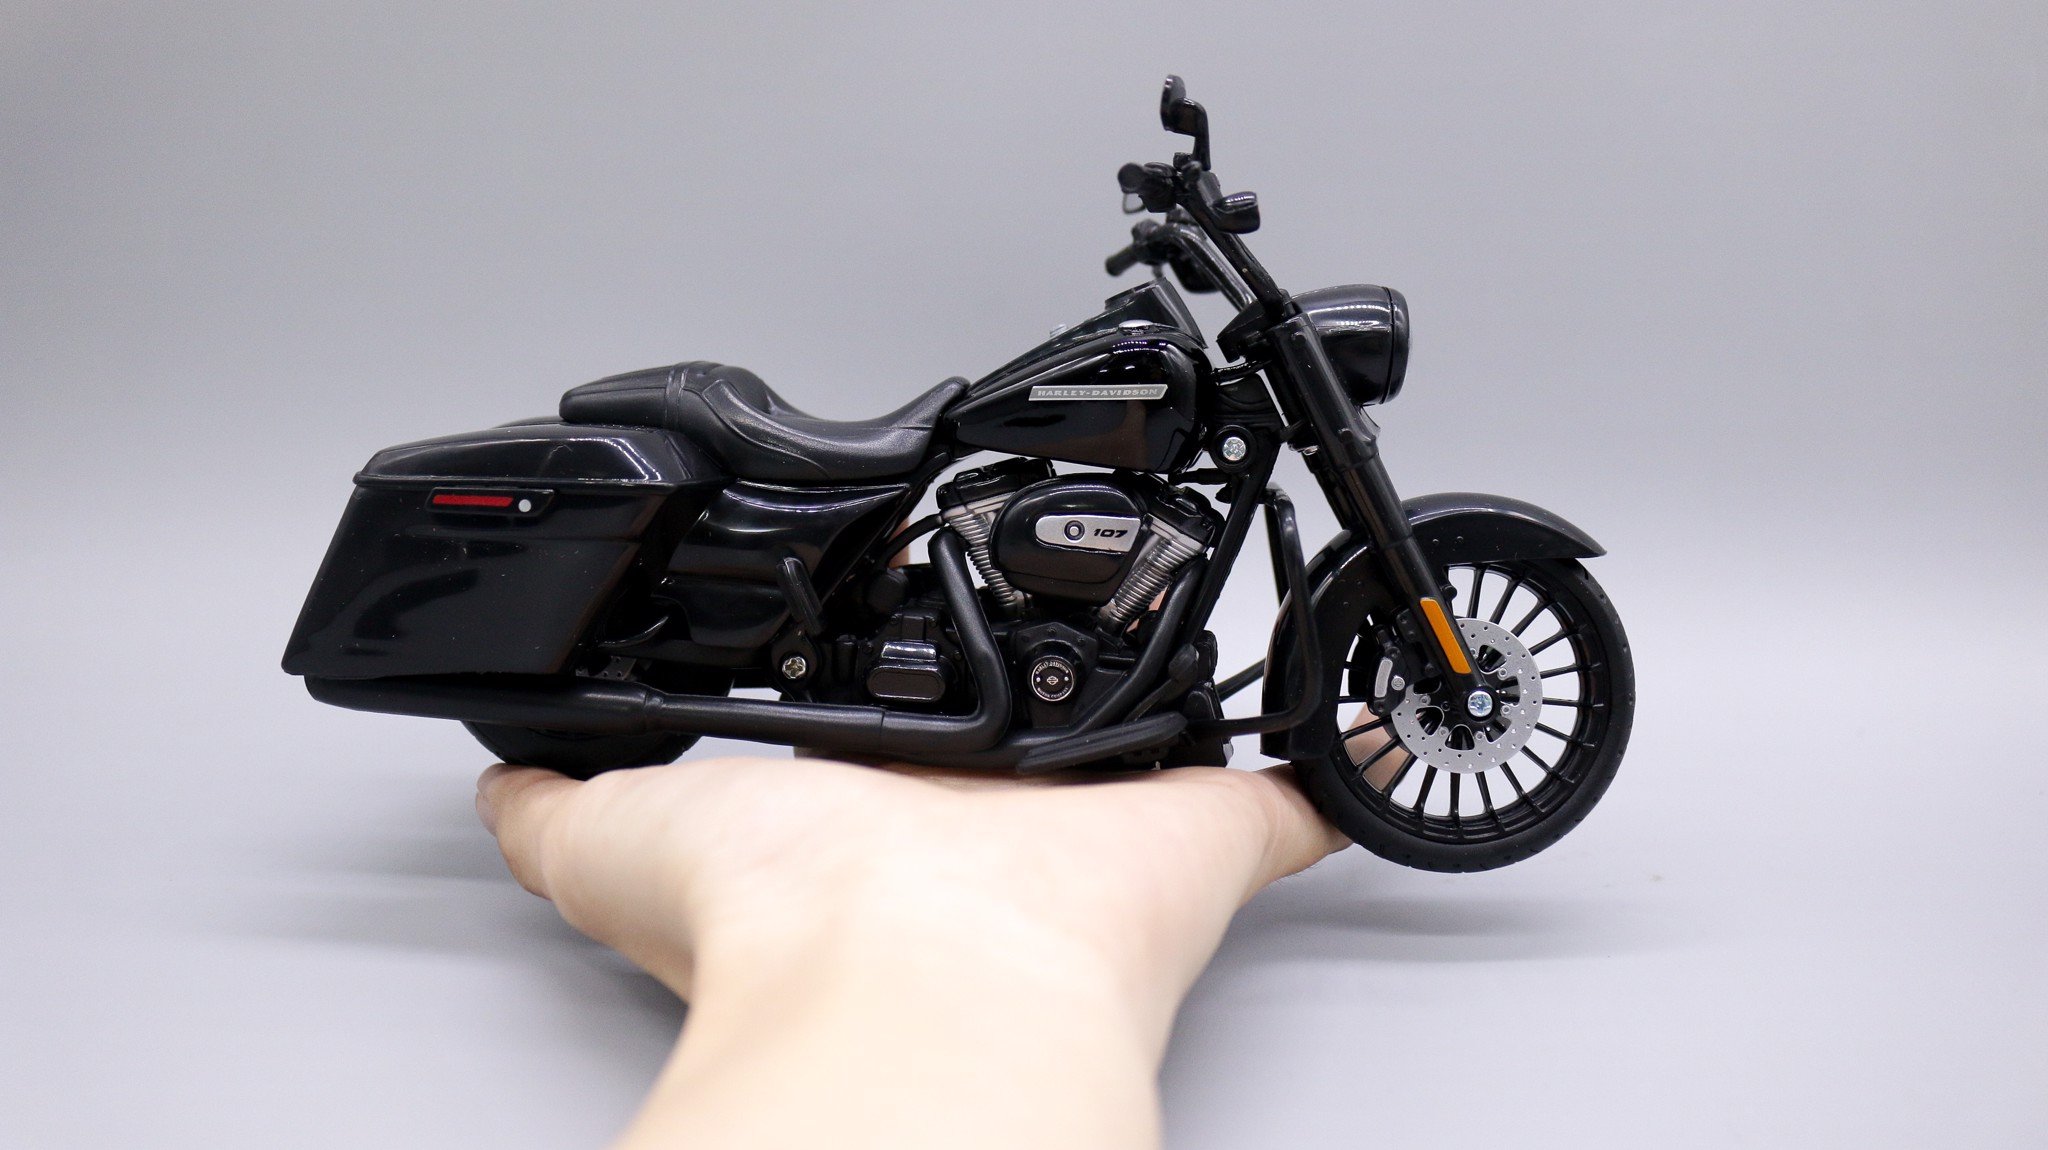  Mô hình xe Harley Davidson road king special 1:12 maisto 4833 